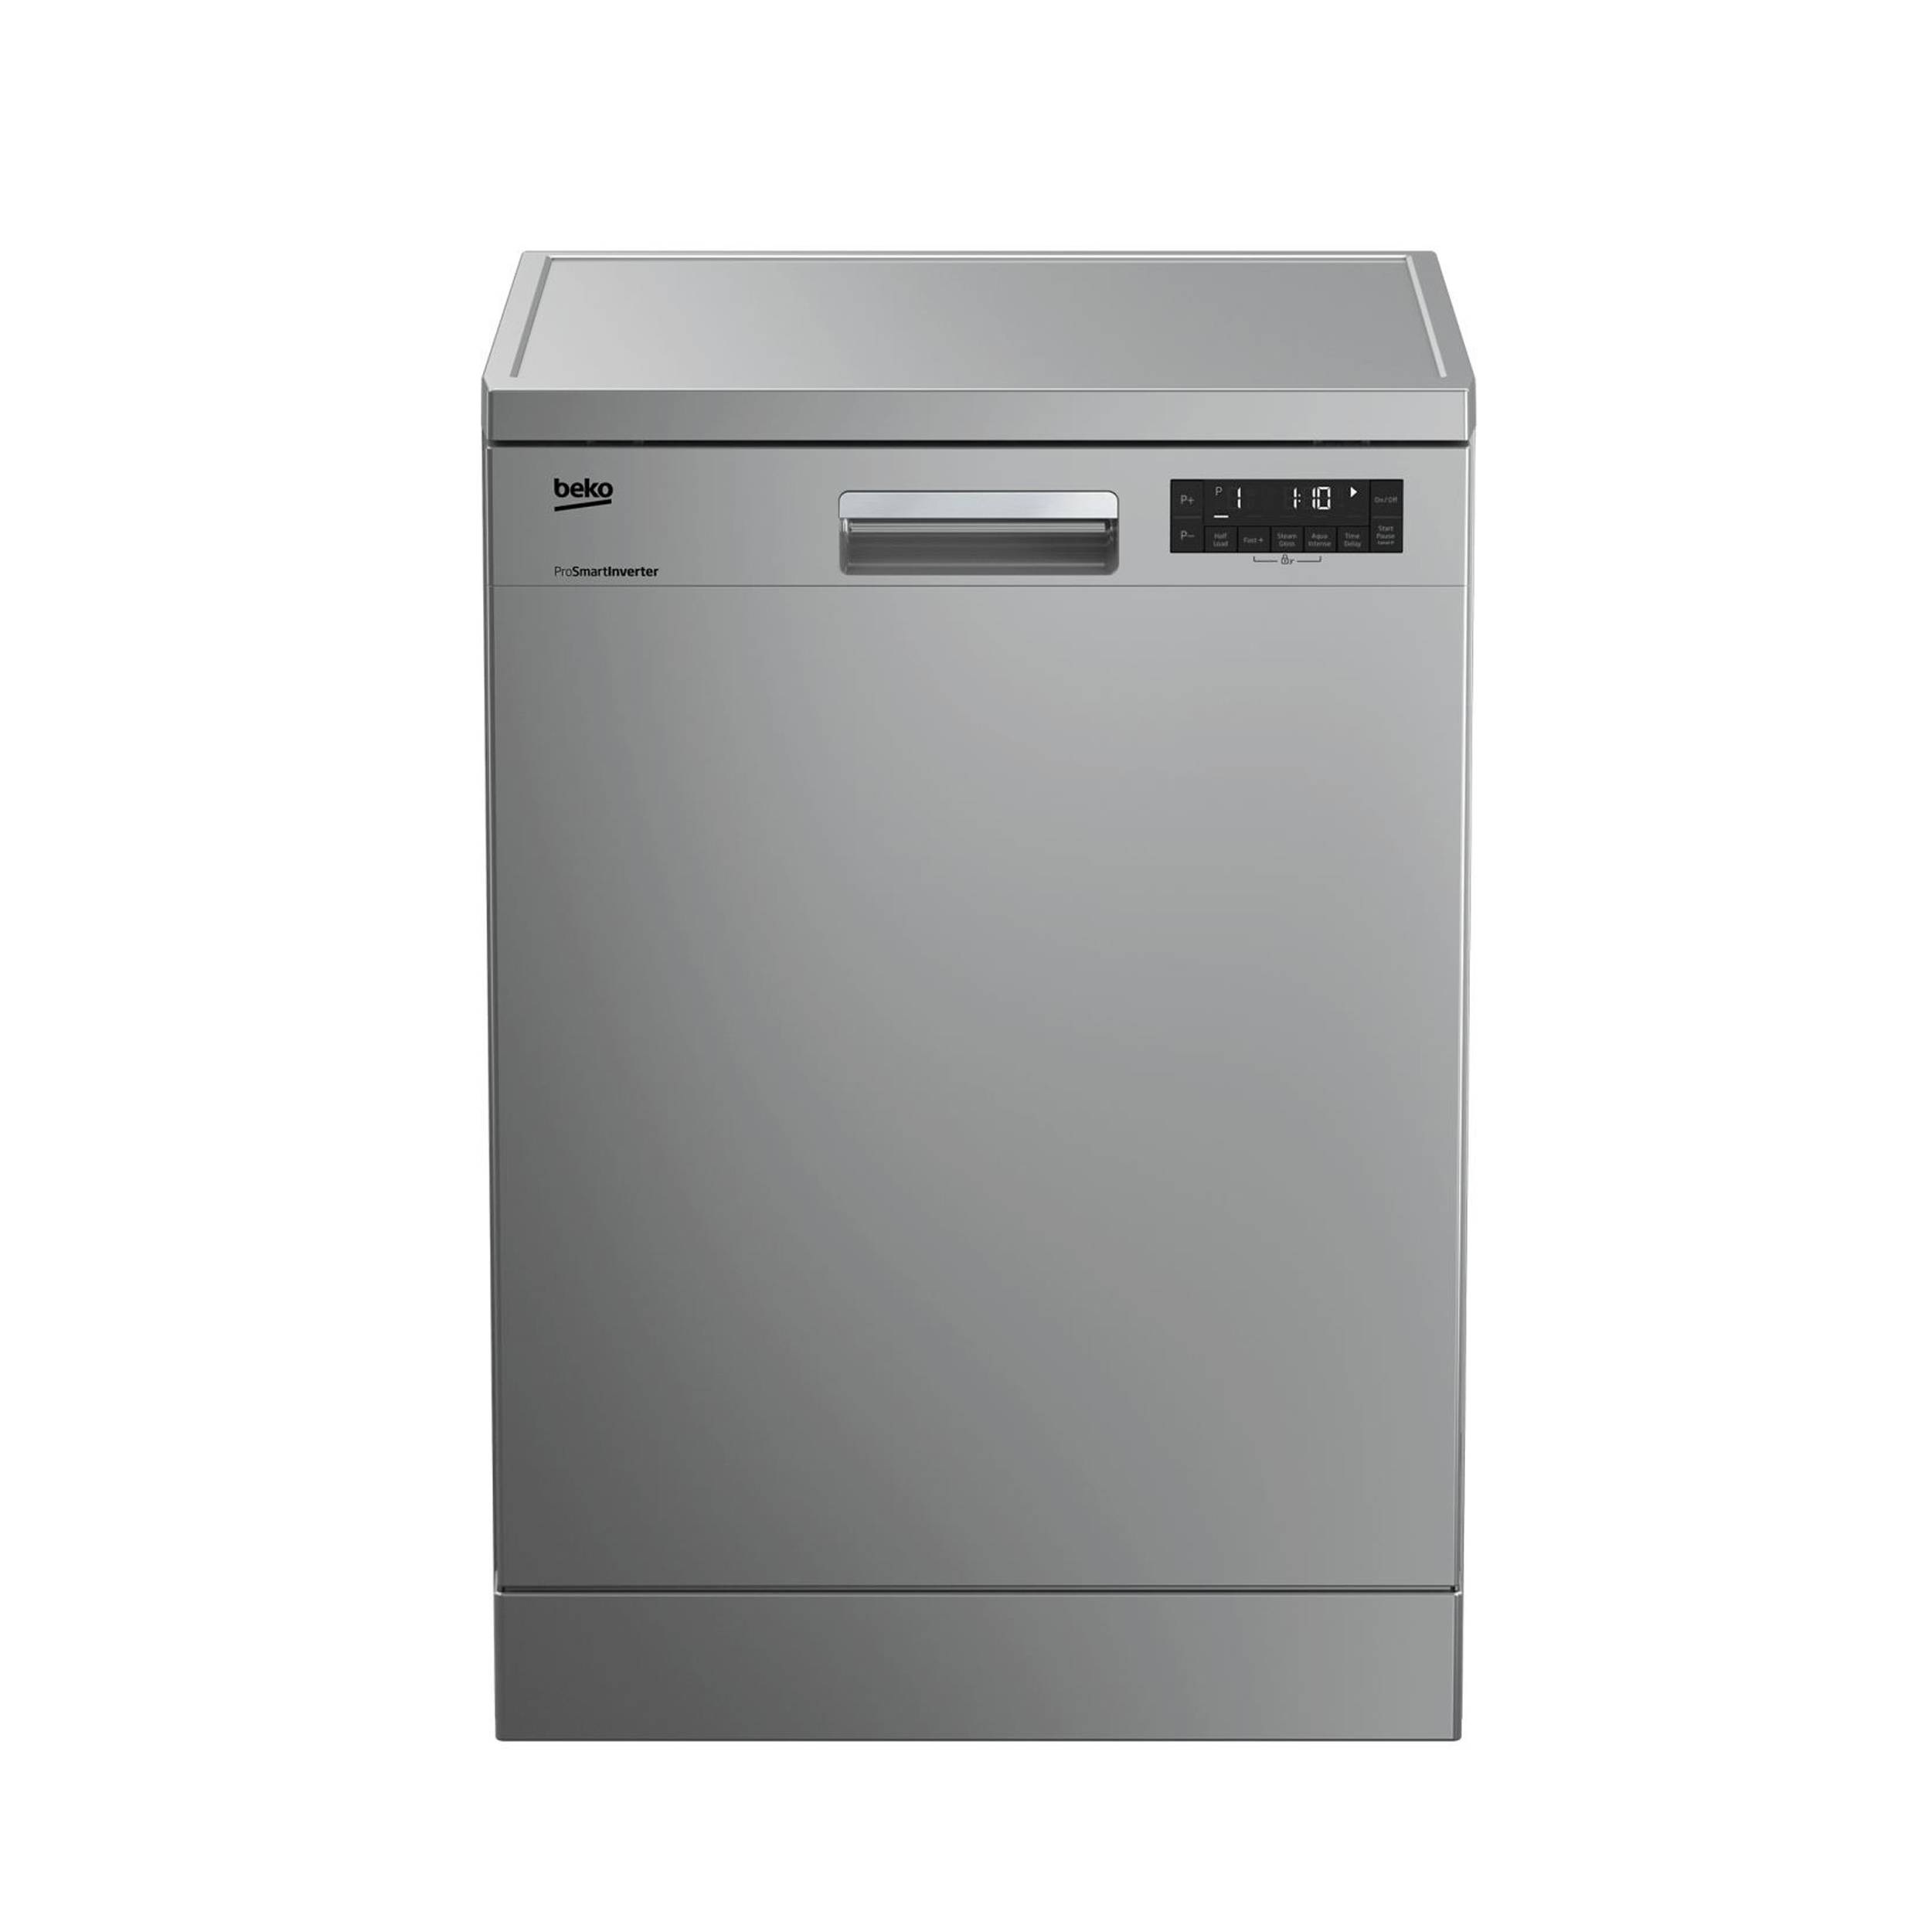 نکته خرید - قیمت روز ماشین ظرفشویی بکو مدل DFN28424 W خرید